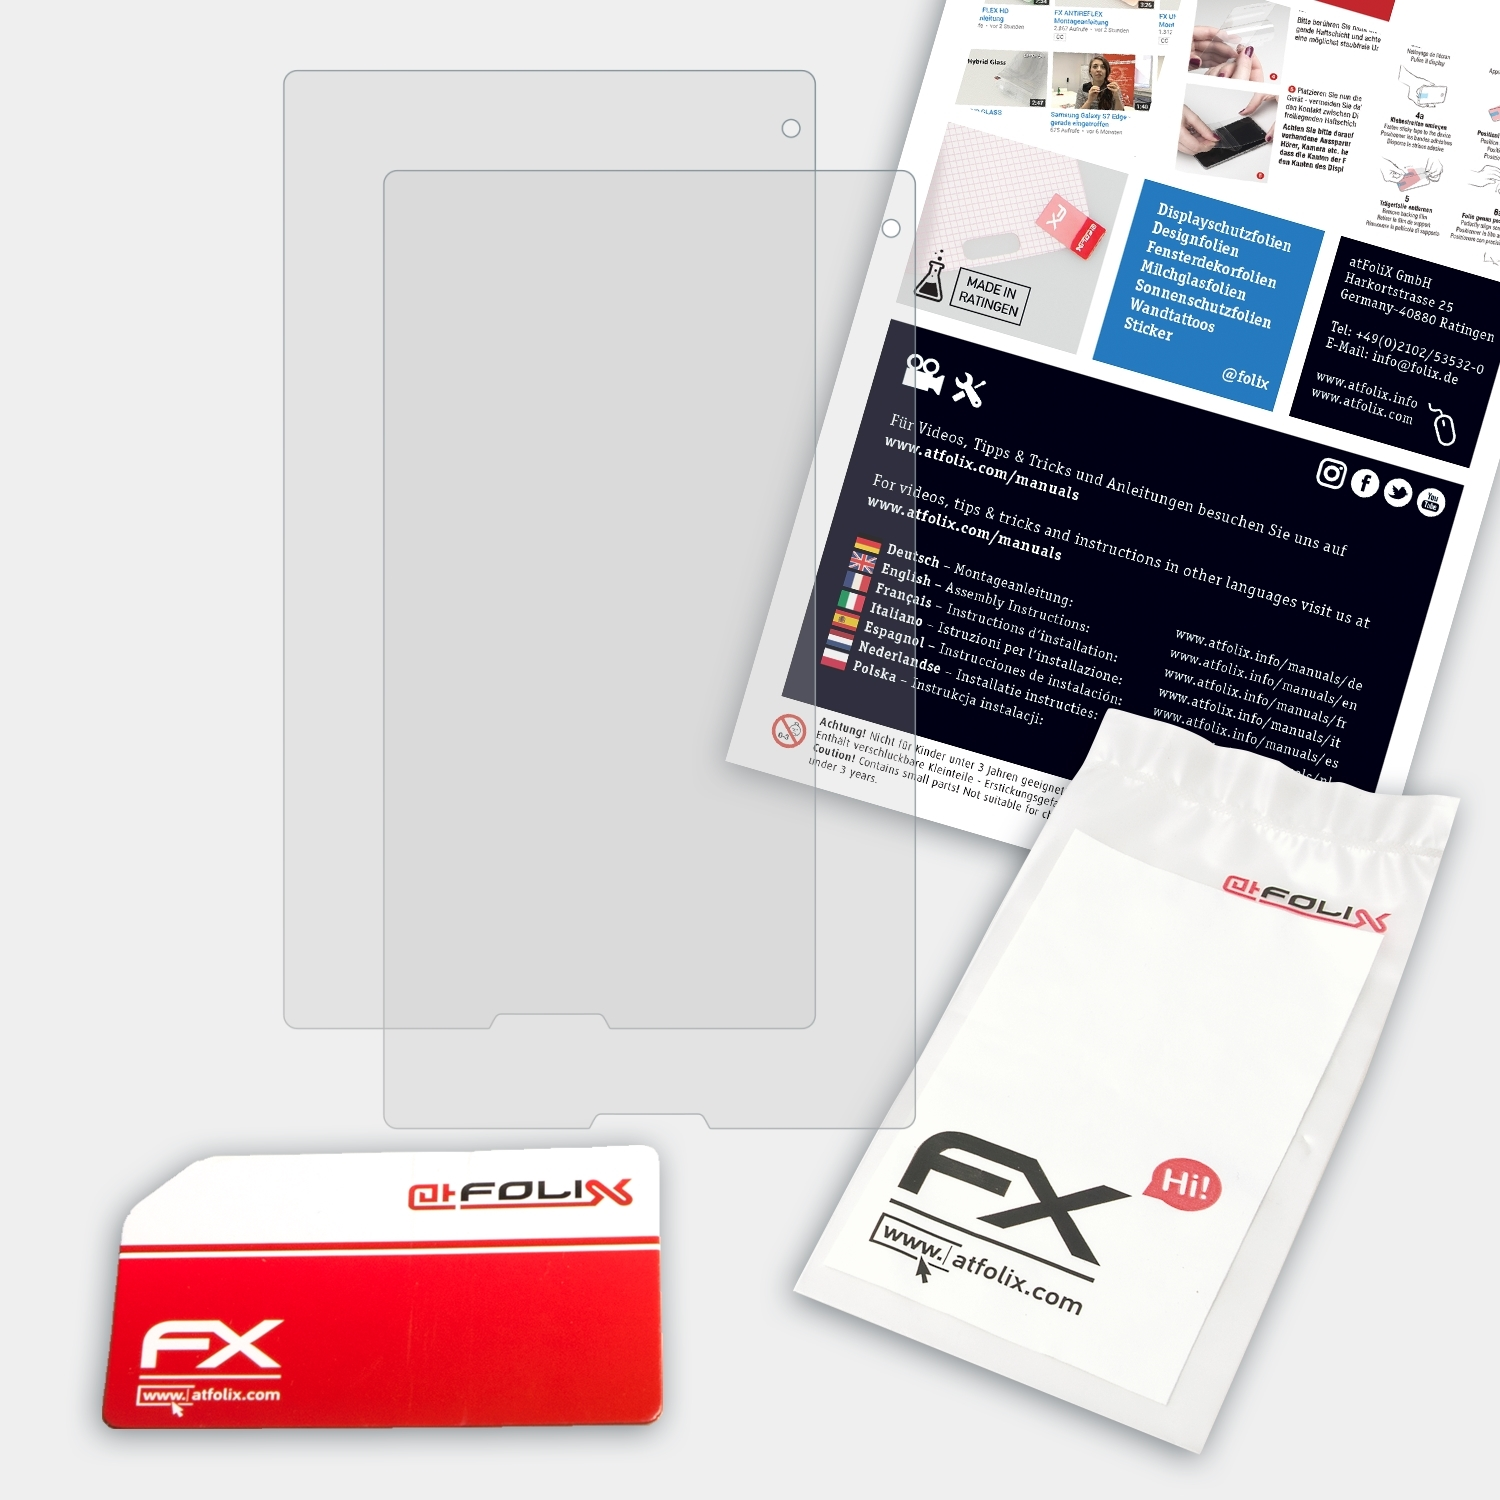 ATFOLIX 2x FX-Antireflex Displayschutz(für Medion (MD LIFETAB 99612)) P8314